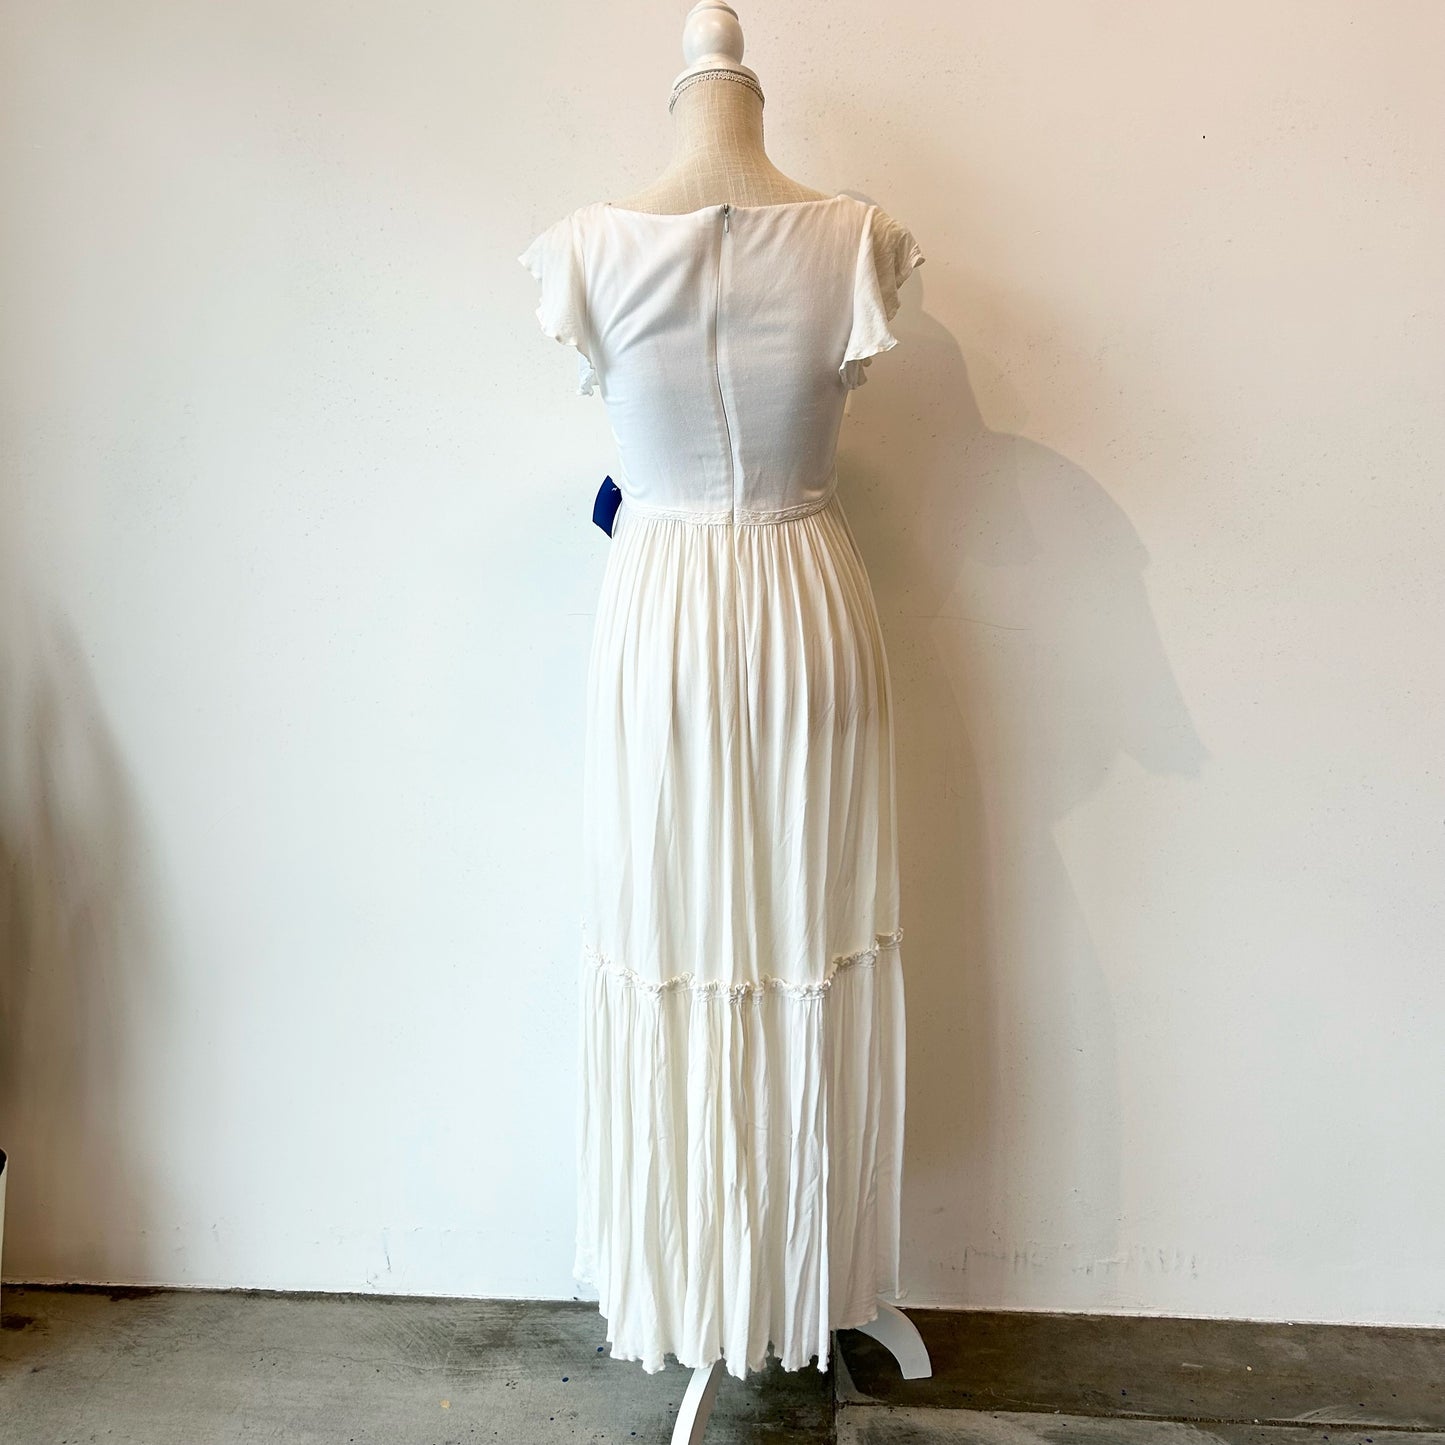 L/14 Mia Folie Ivory Lace Maxi Dress